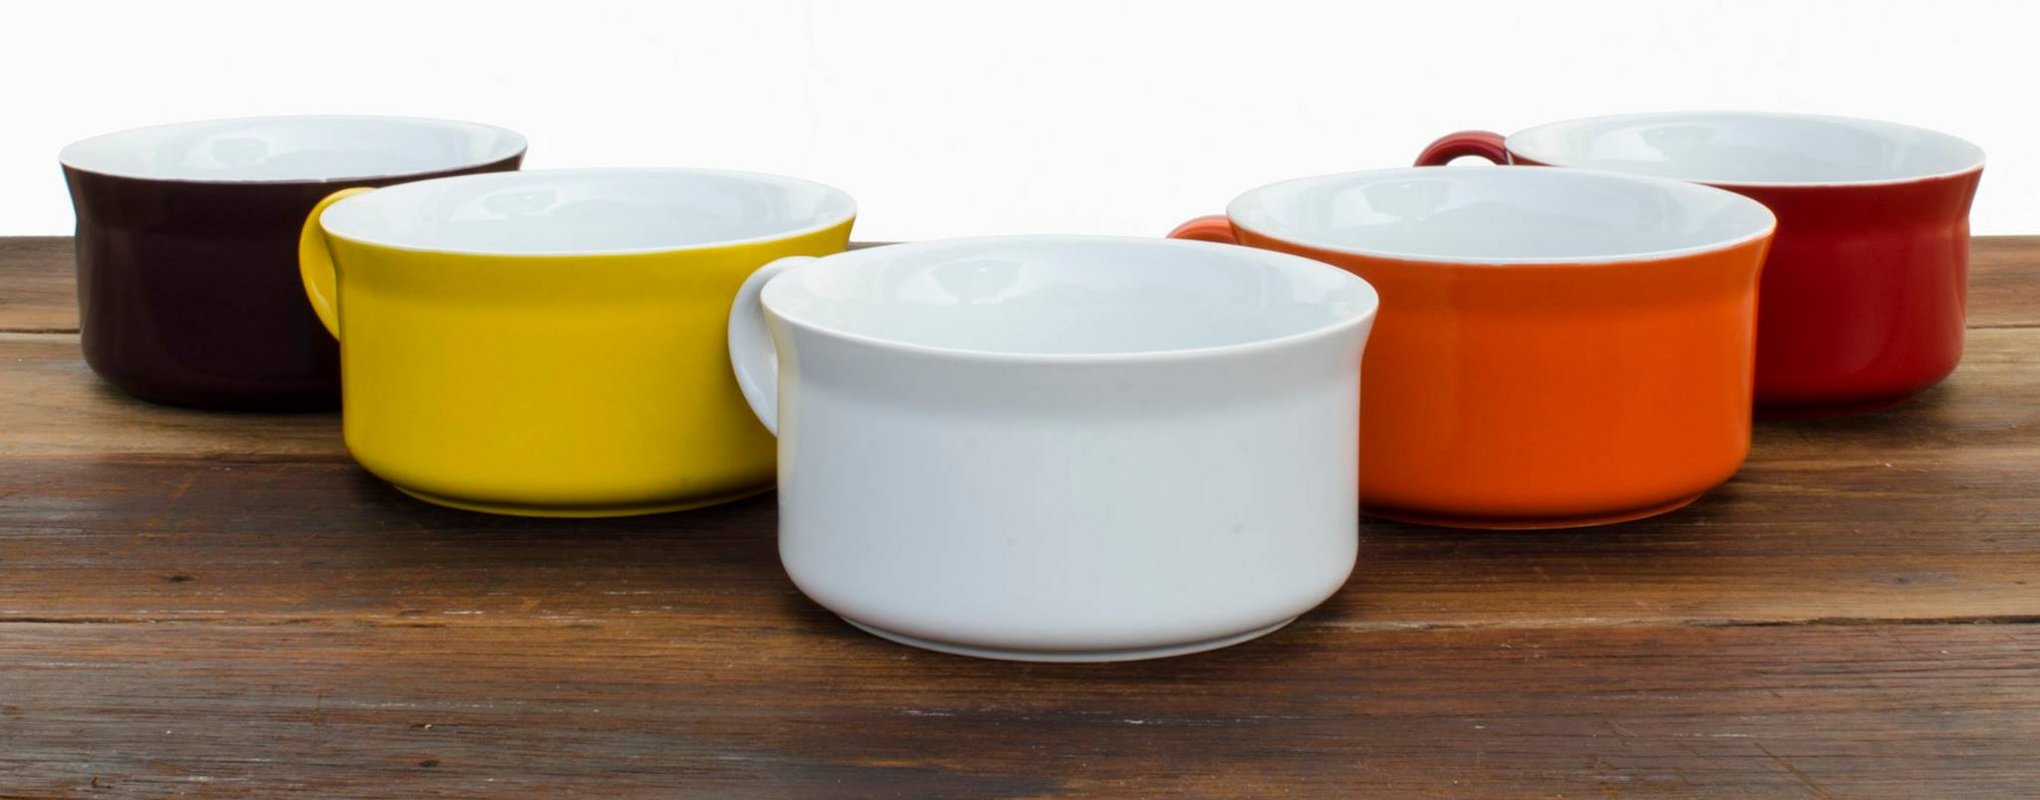 Новинки керамической посуды от Ceraflame 2014 года. Коллекция кружек для супа - вид А